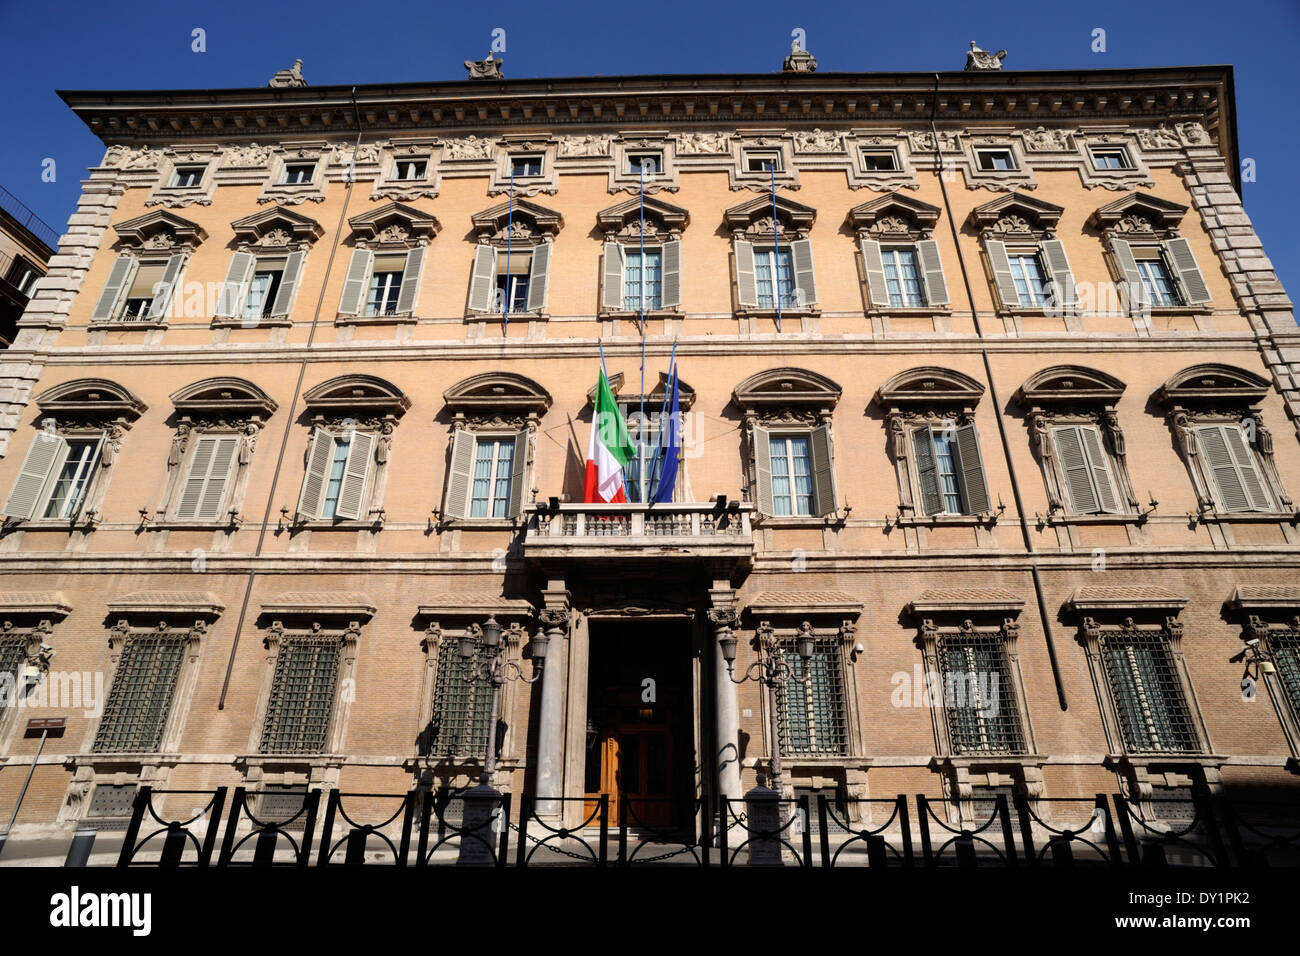 Italy, Rome, Palazzo Madama, senate, italian parliament Stock Photo